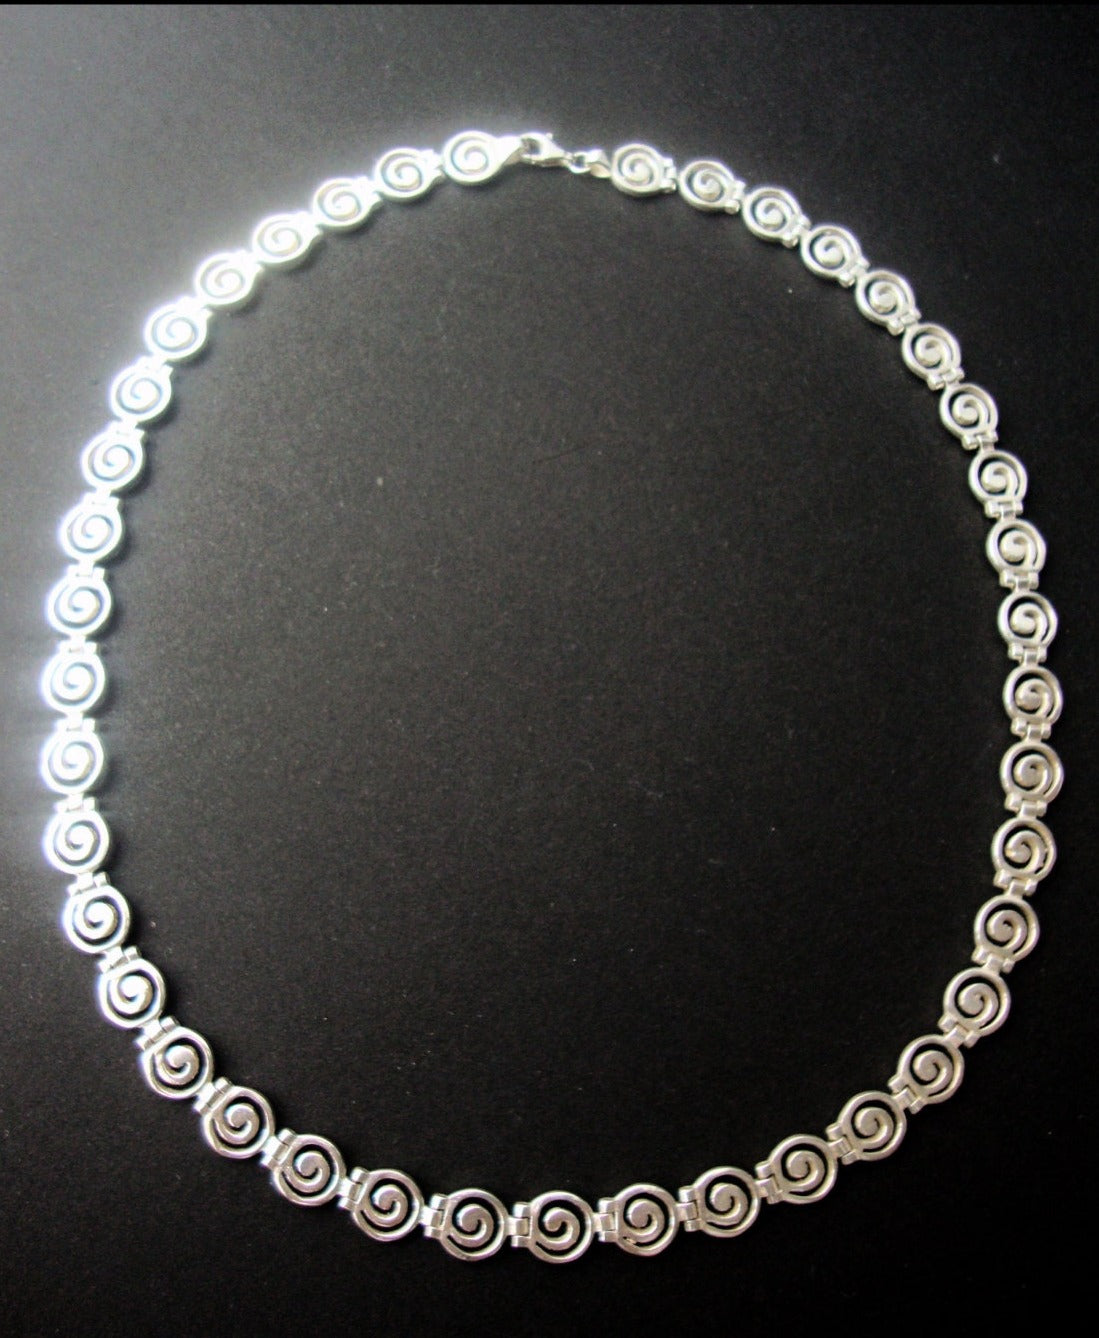 Sterling Silber 925 Antike griechische Spiralkette 40-45-50-55-60-65 cm, 16-18-20-22-24-26 Zoll, Griechische Silber Kette, Collier Grecque